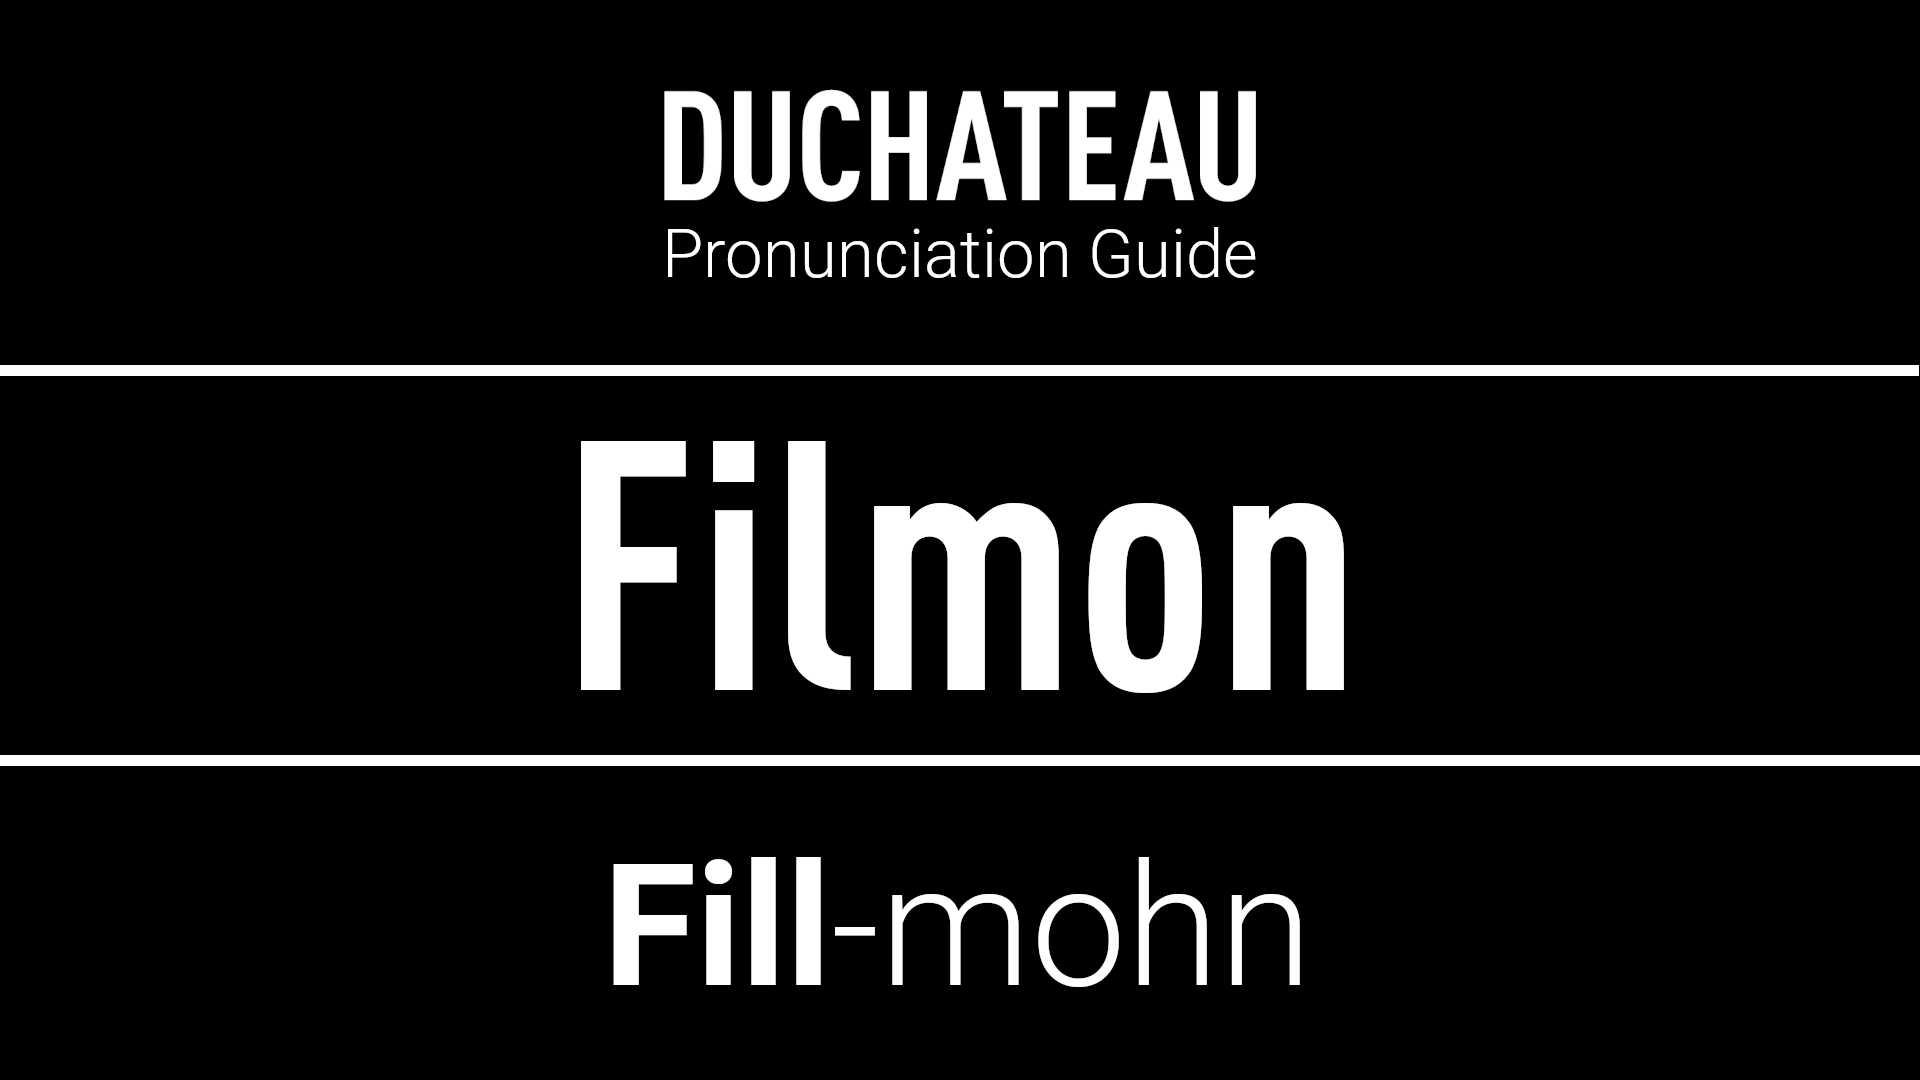 Filmon Pronunciation